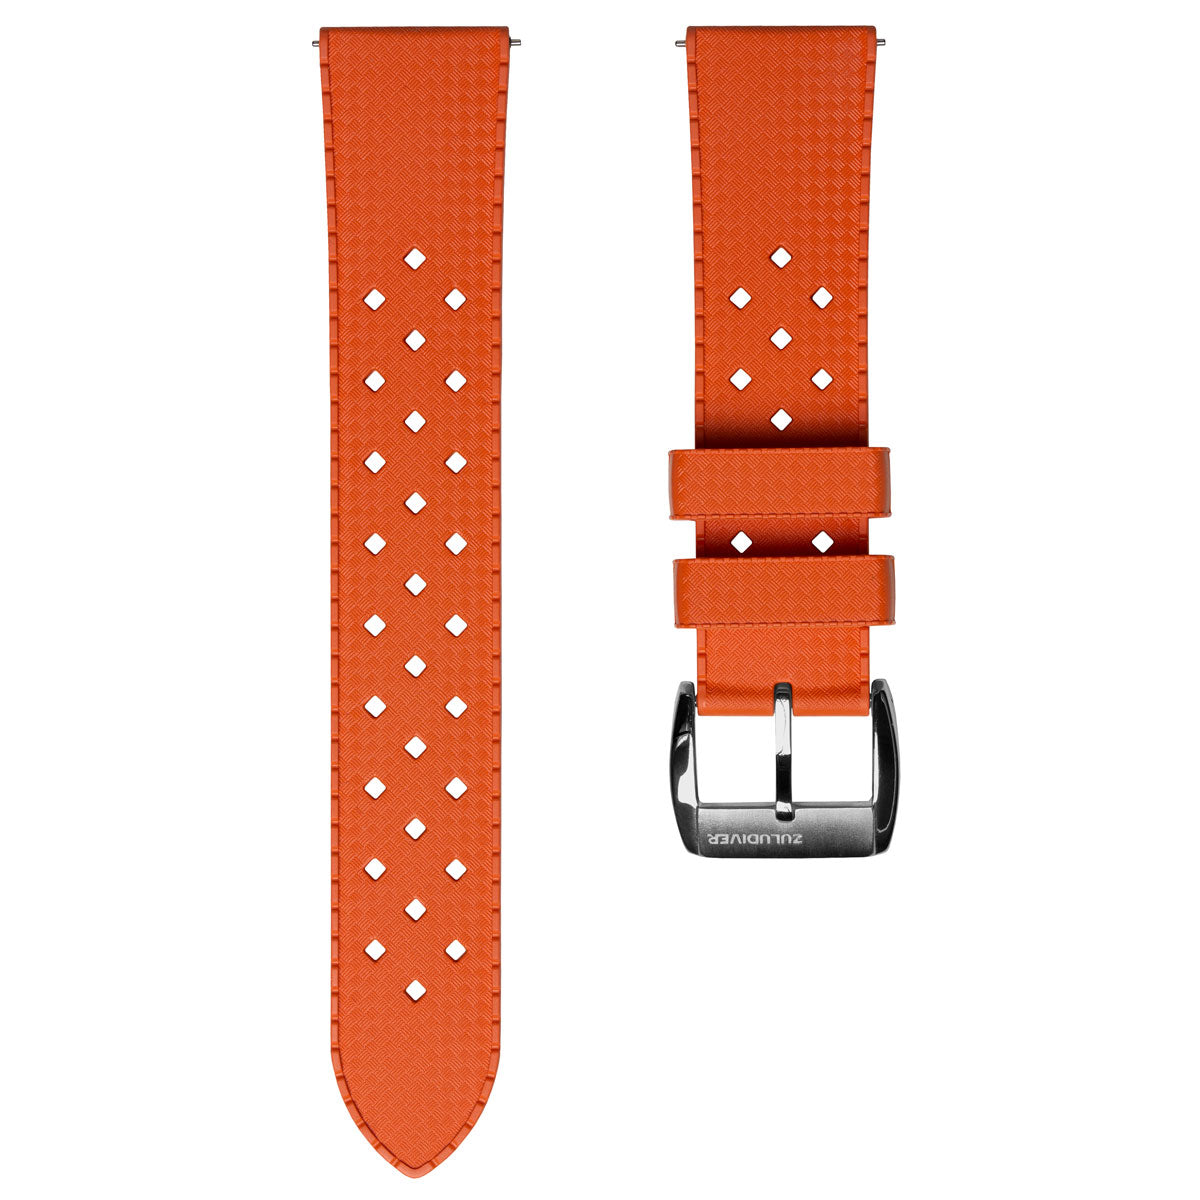 ZULUDIVER Modern Tropical Watch Strap (MkII) - Orange - Silver Hardware